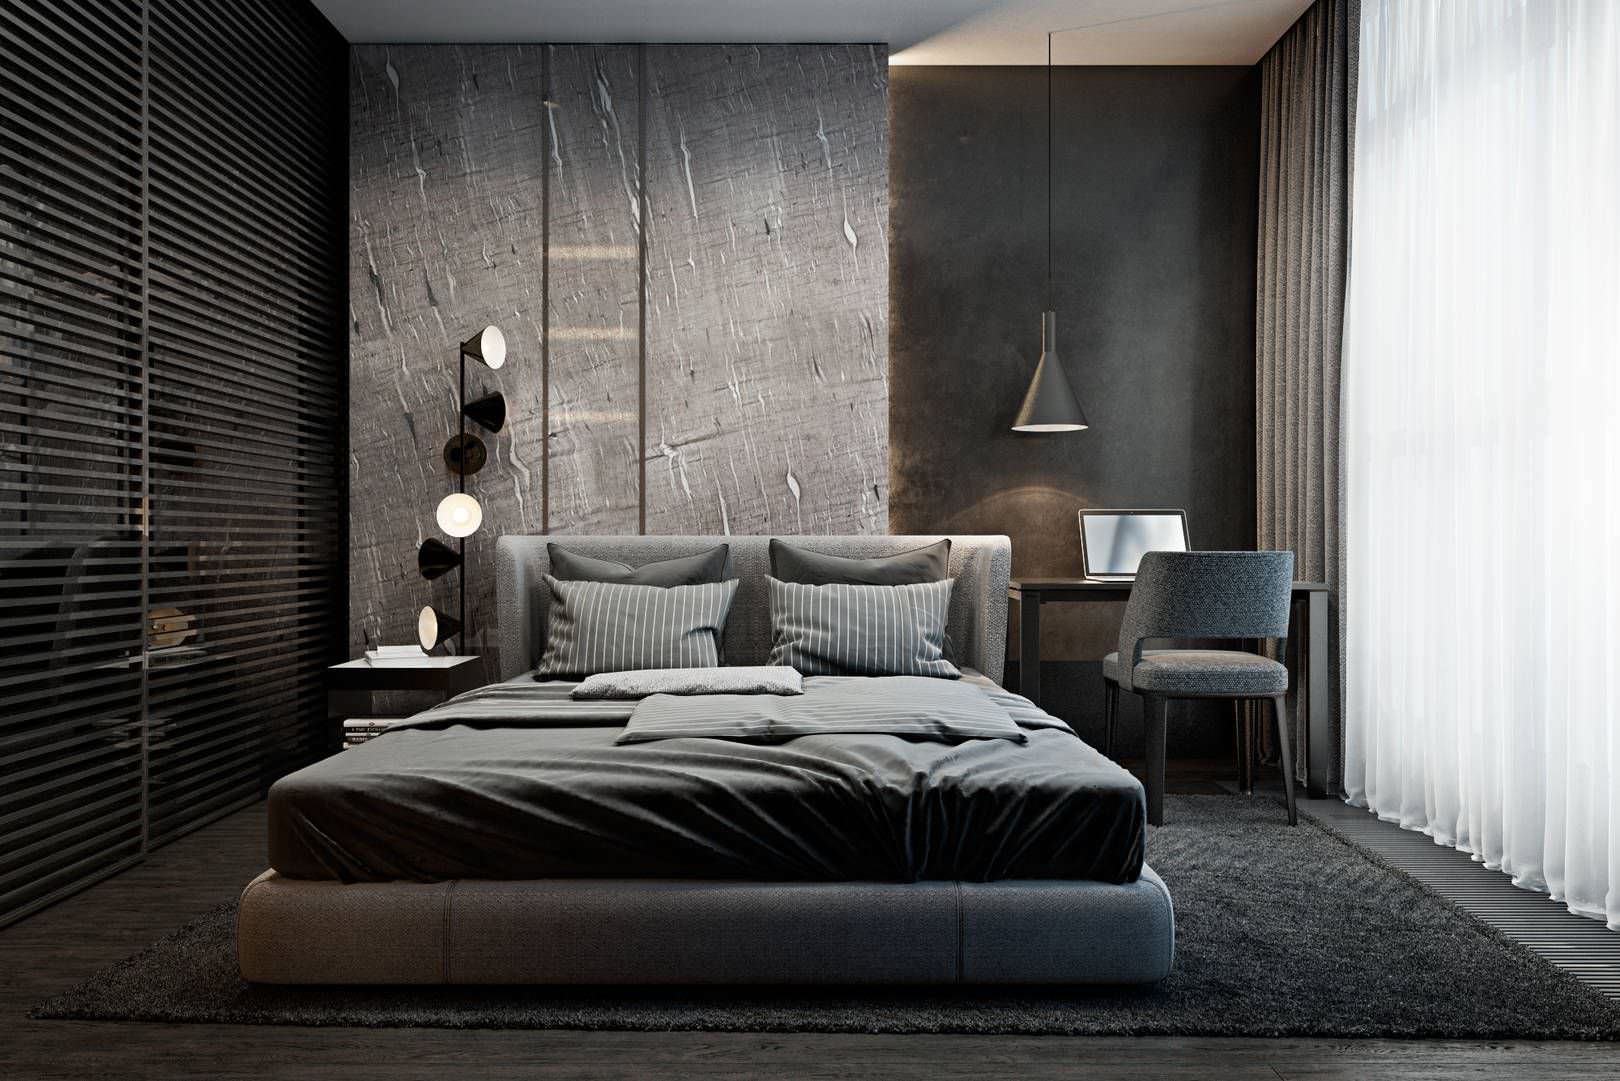 Trang trí phòng ngủ phong cách tối giản | THẢO LƯƠNG HOME - KIẾN TRÚC XÂY  DỰNG